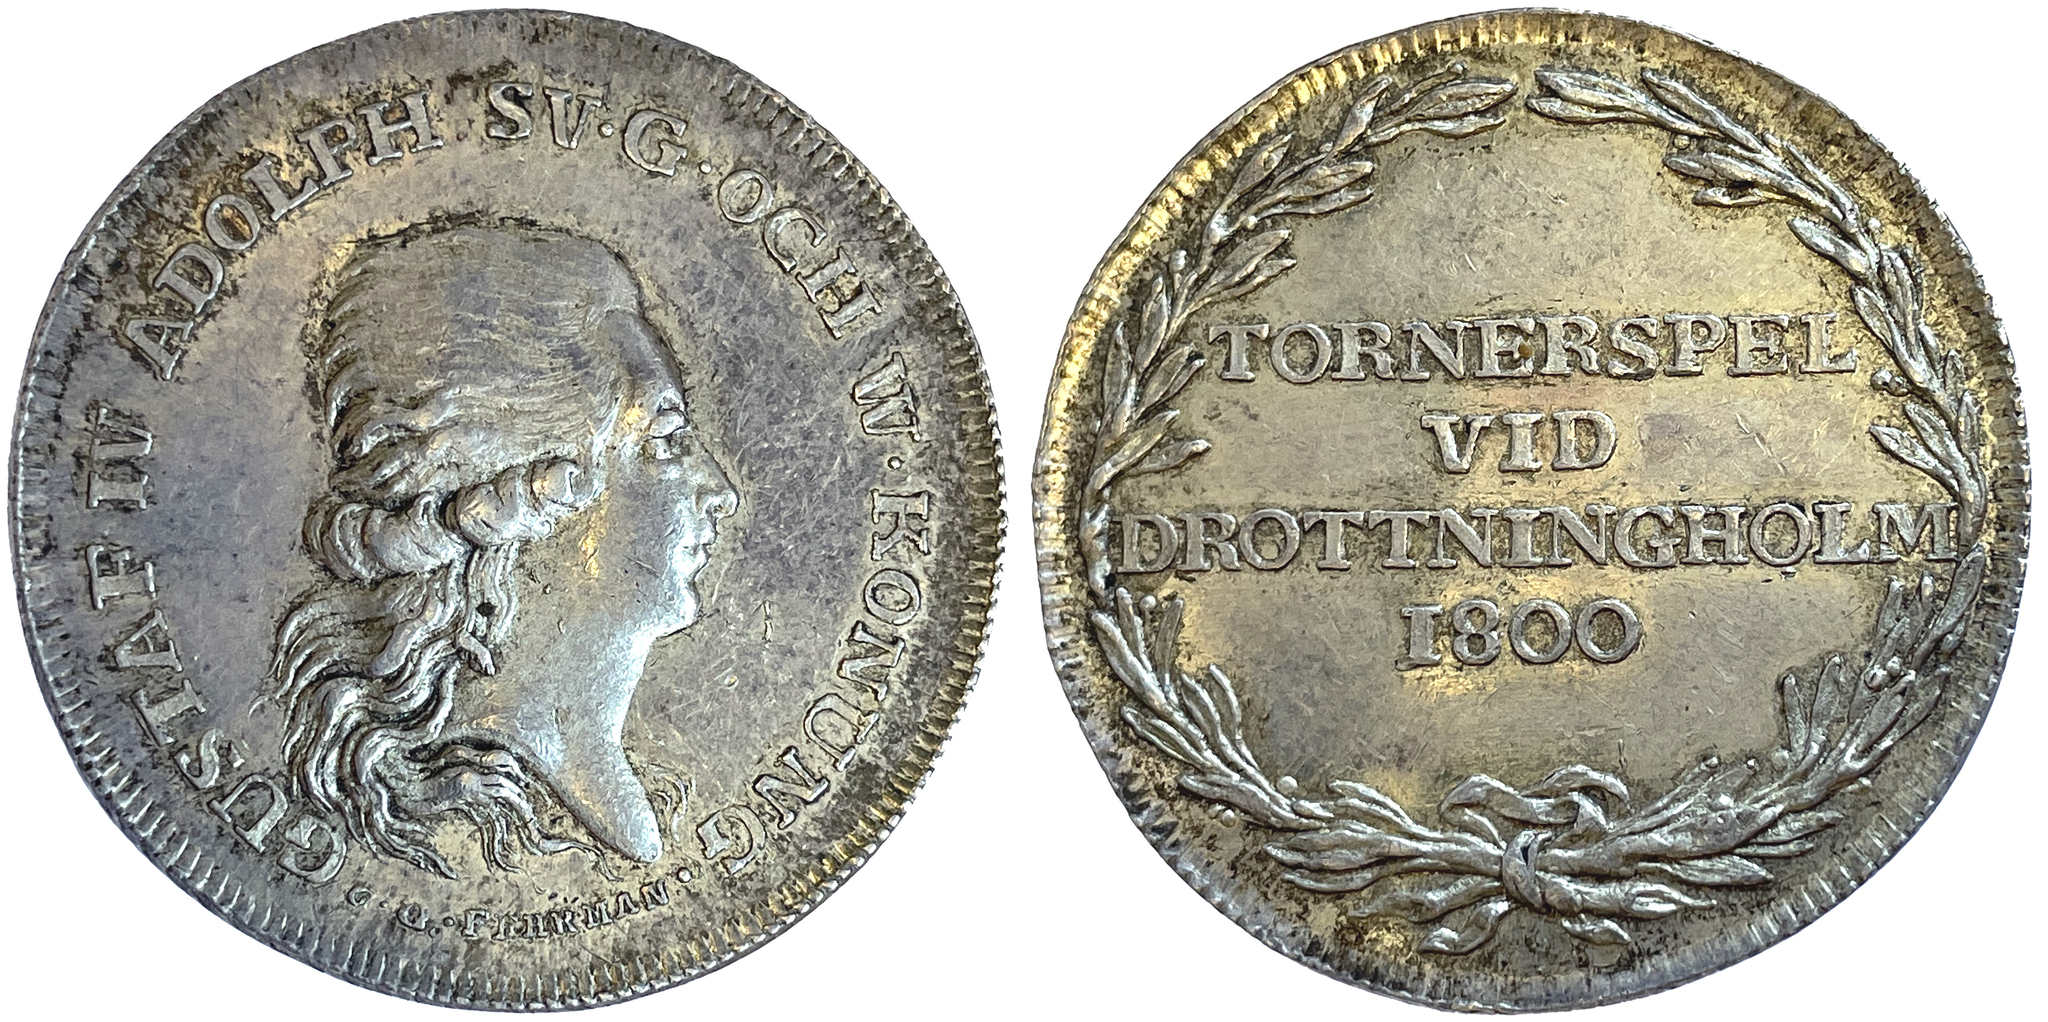 Gustav IV Adolf, Medalj utdelad vid tornerspelen år 1800